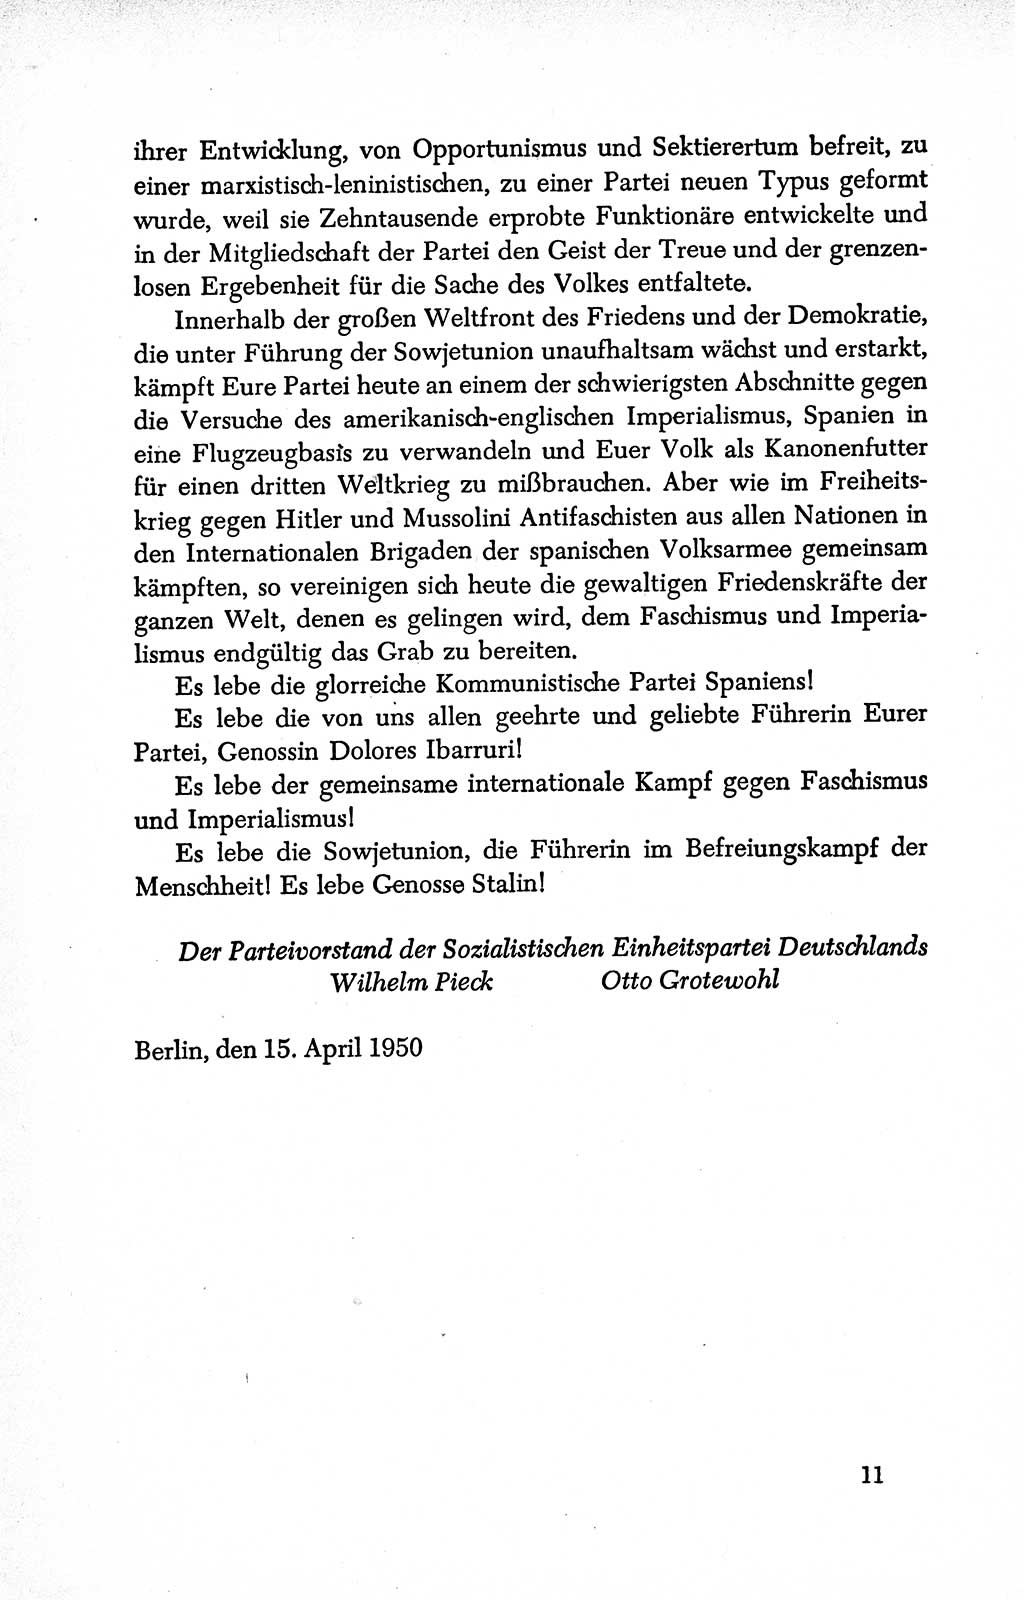 Dokumente der Sozialistischen Einheitspartei Deutschlands (SED) [Deutsche Demokratische Republik (DDR)] 1950-1952, Seite 11 (Dok. SED DDR 1950-1952, S. 11)